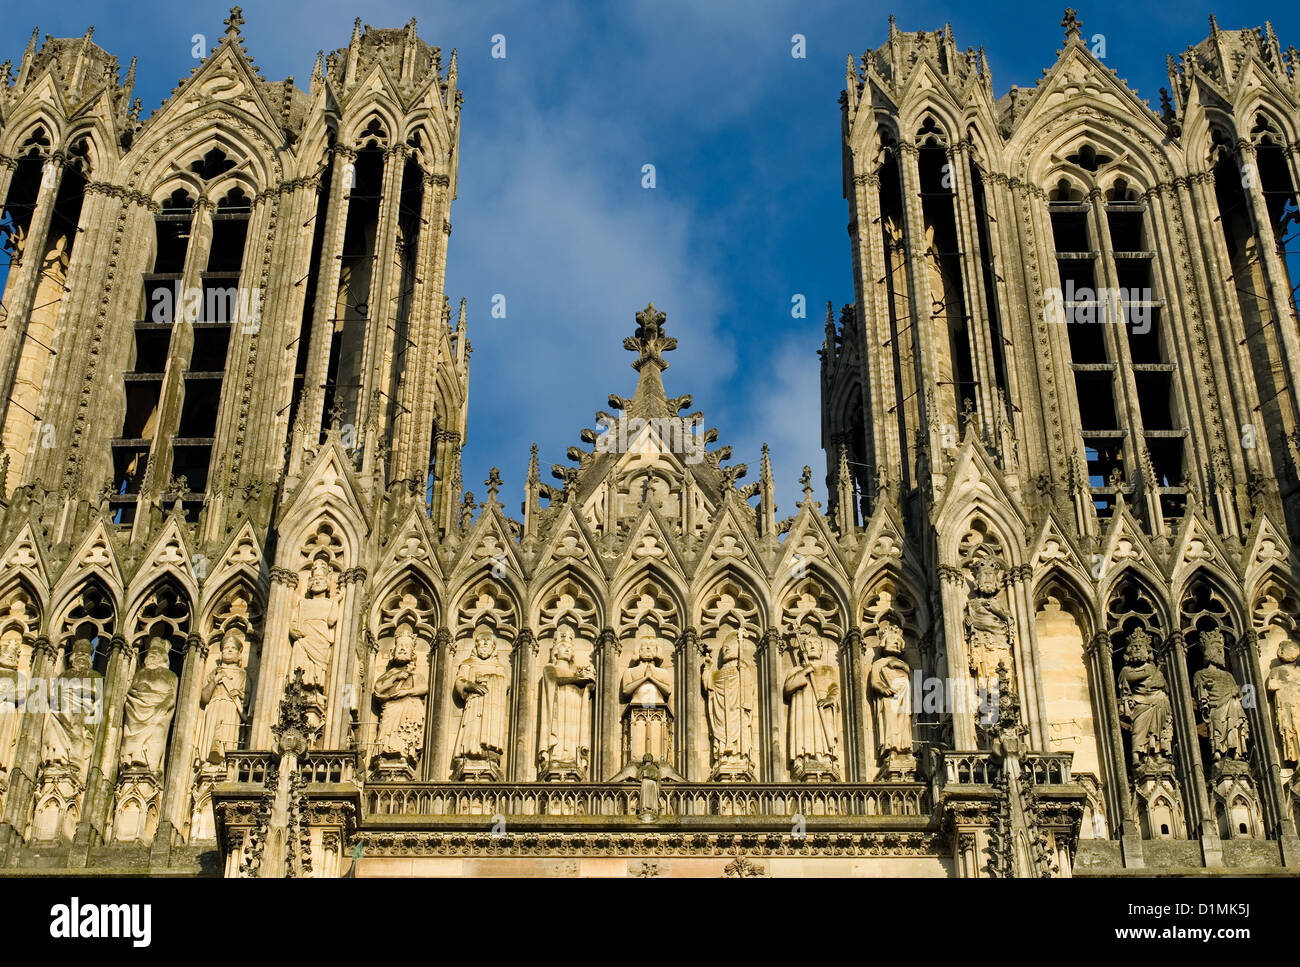 La imponente estructura de la Catedral de Reims, Francia Foto de stock